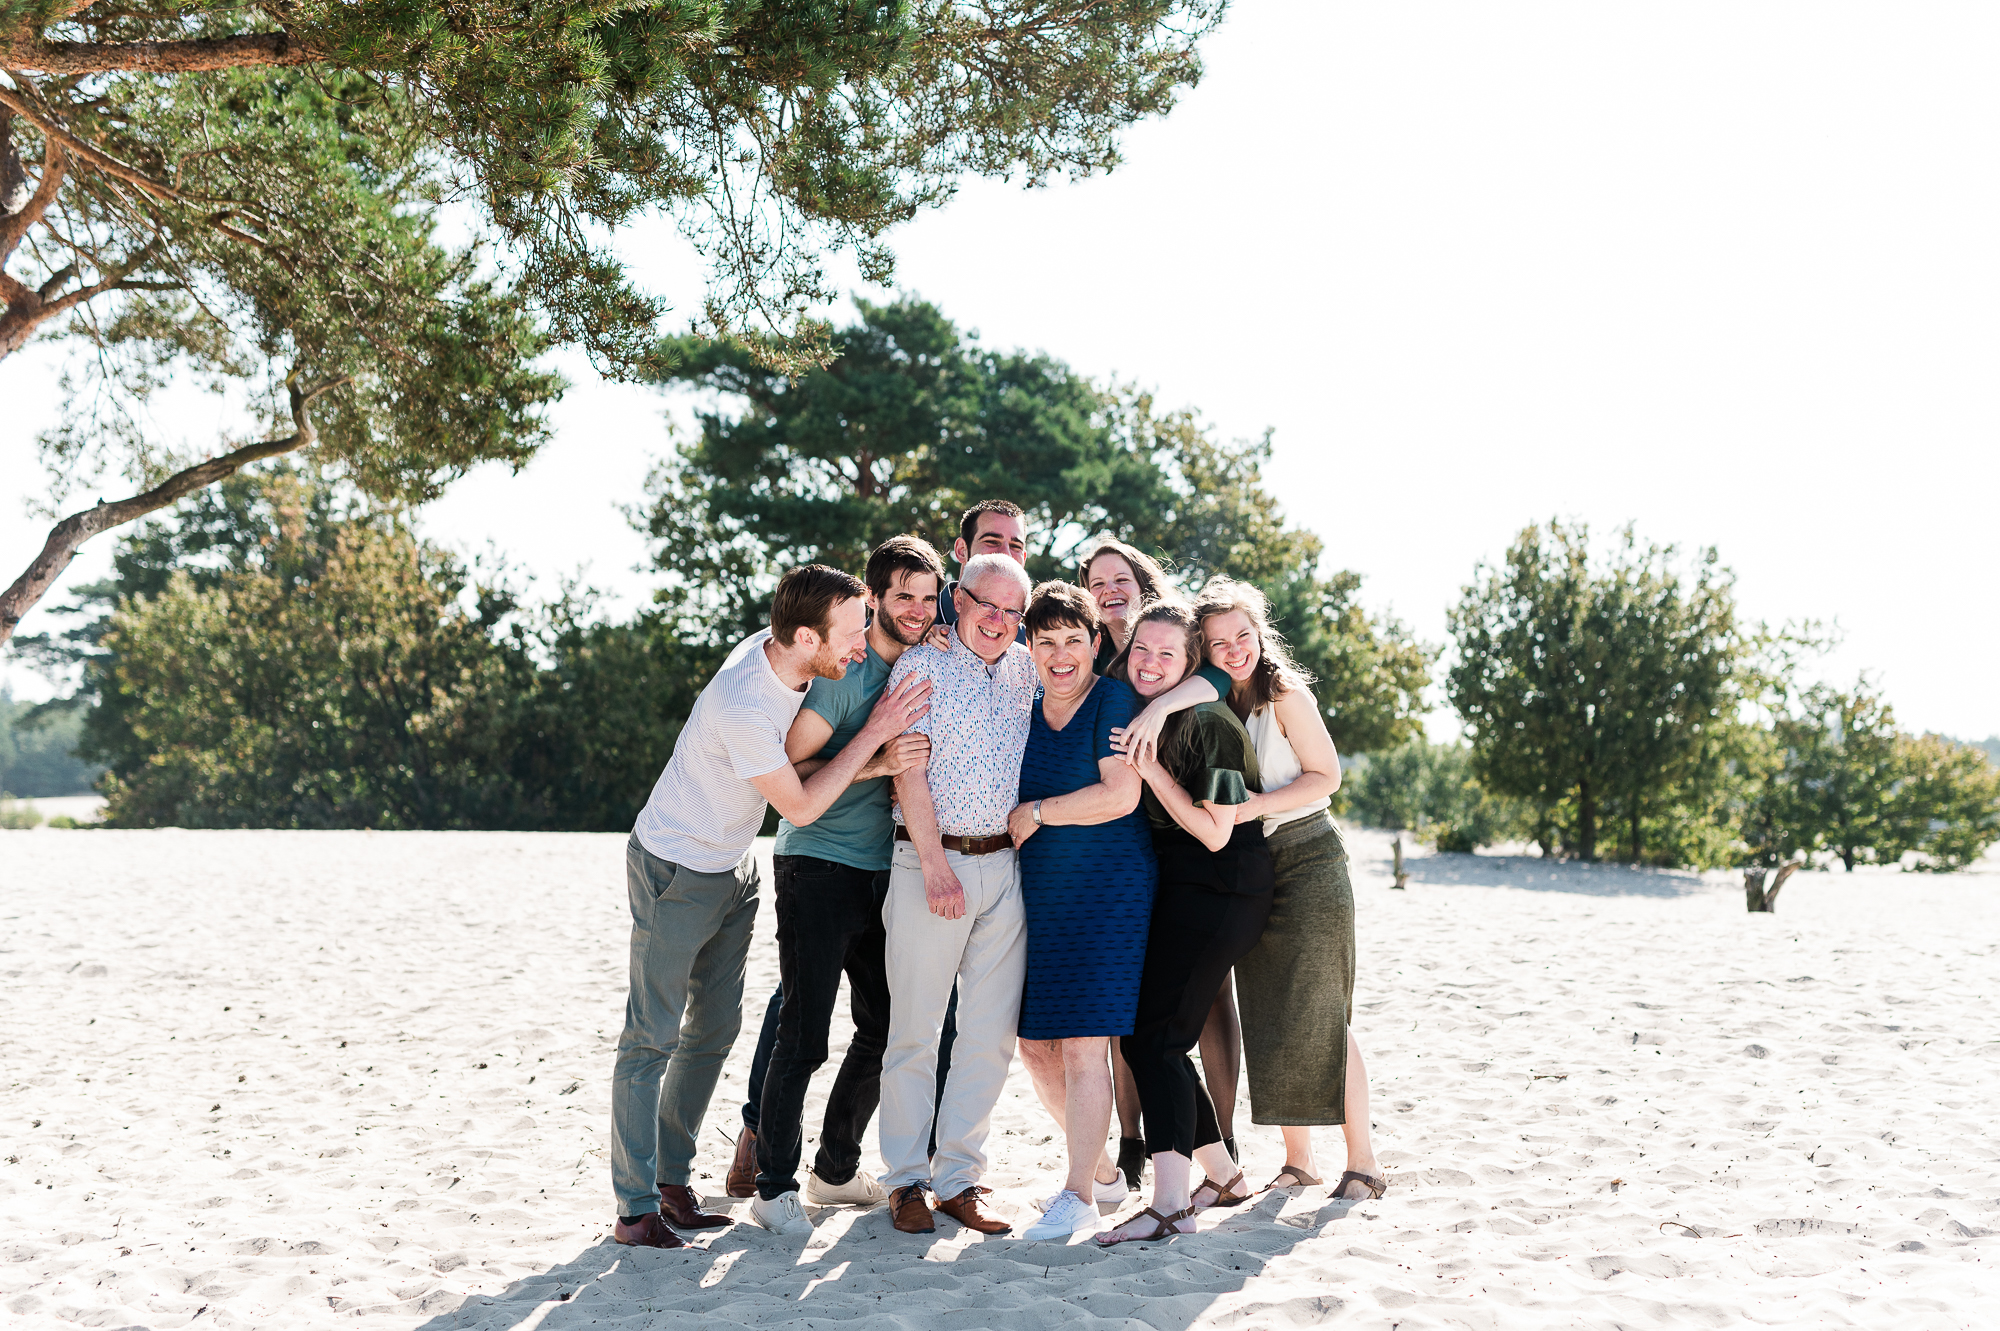 Familie foto met 10 mensen die elkaar innig knuffelen en plezier hebben.